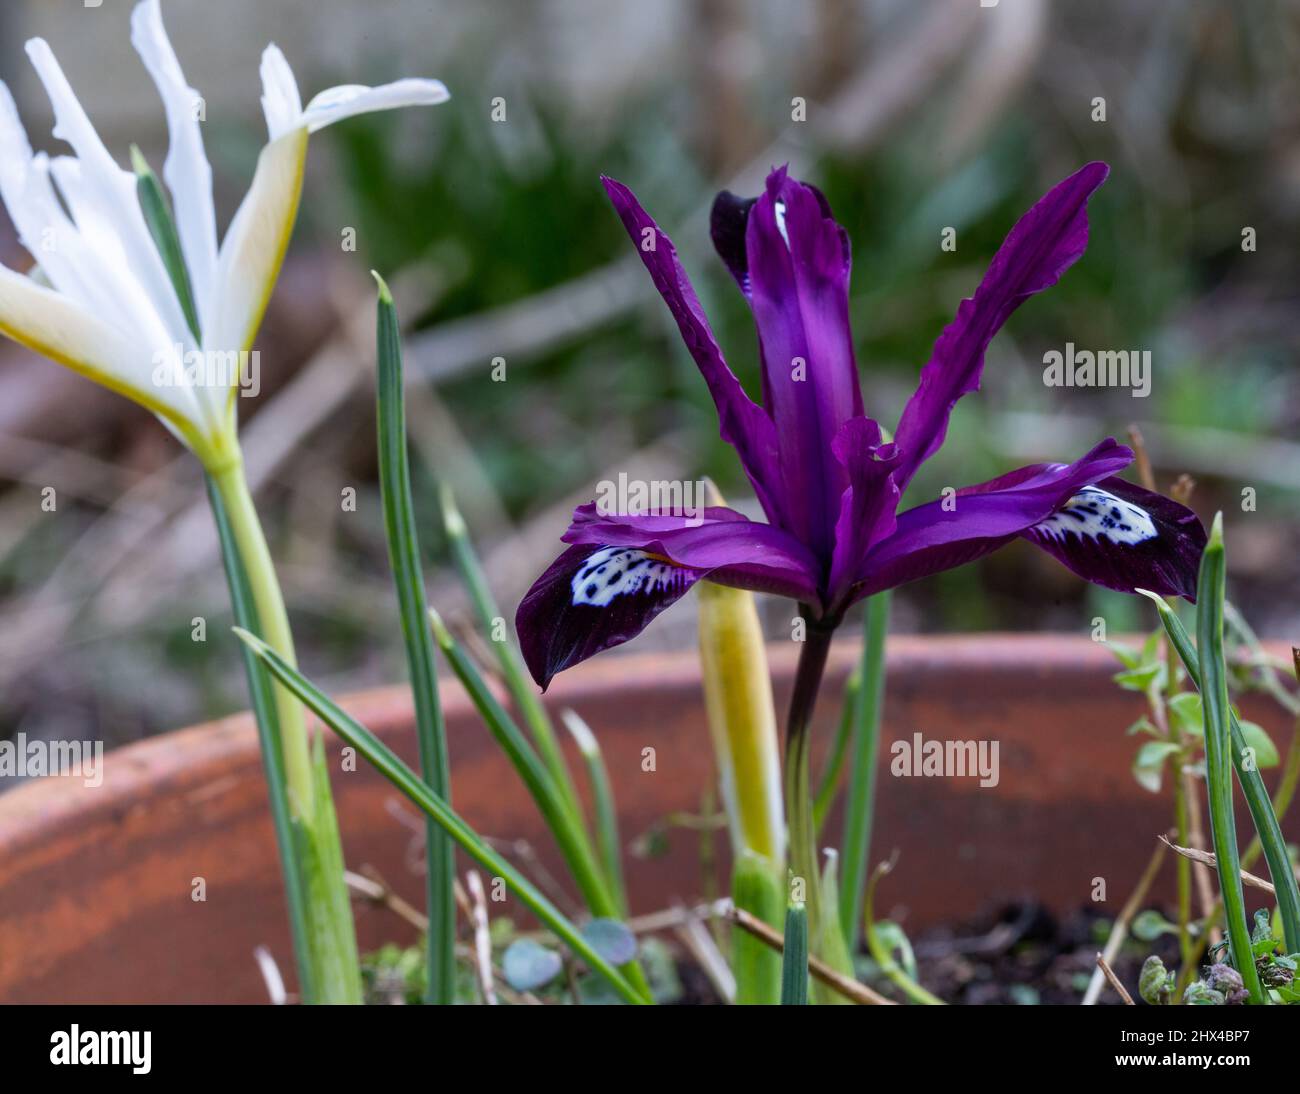 Two varieties of Iris Reticulata - Iris Reticulata 'Pauline' is purple with white markings. Iris Reticulata 'Caucasus' is white with yellow markings. Stock Photo